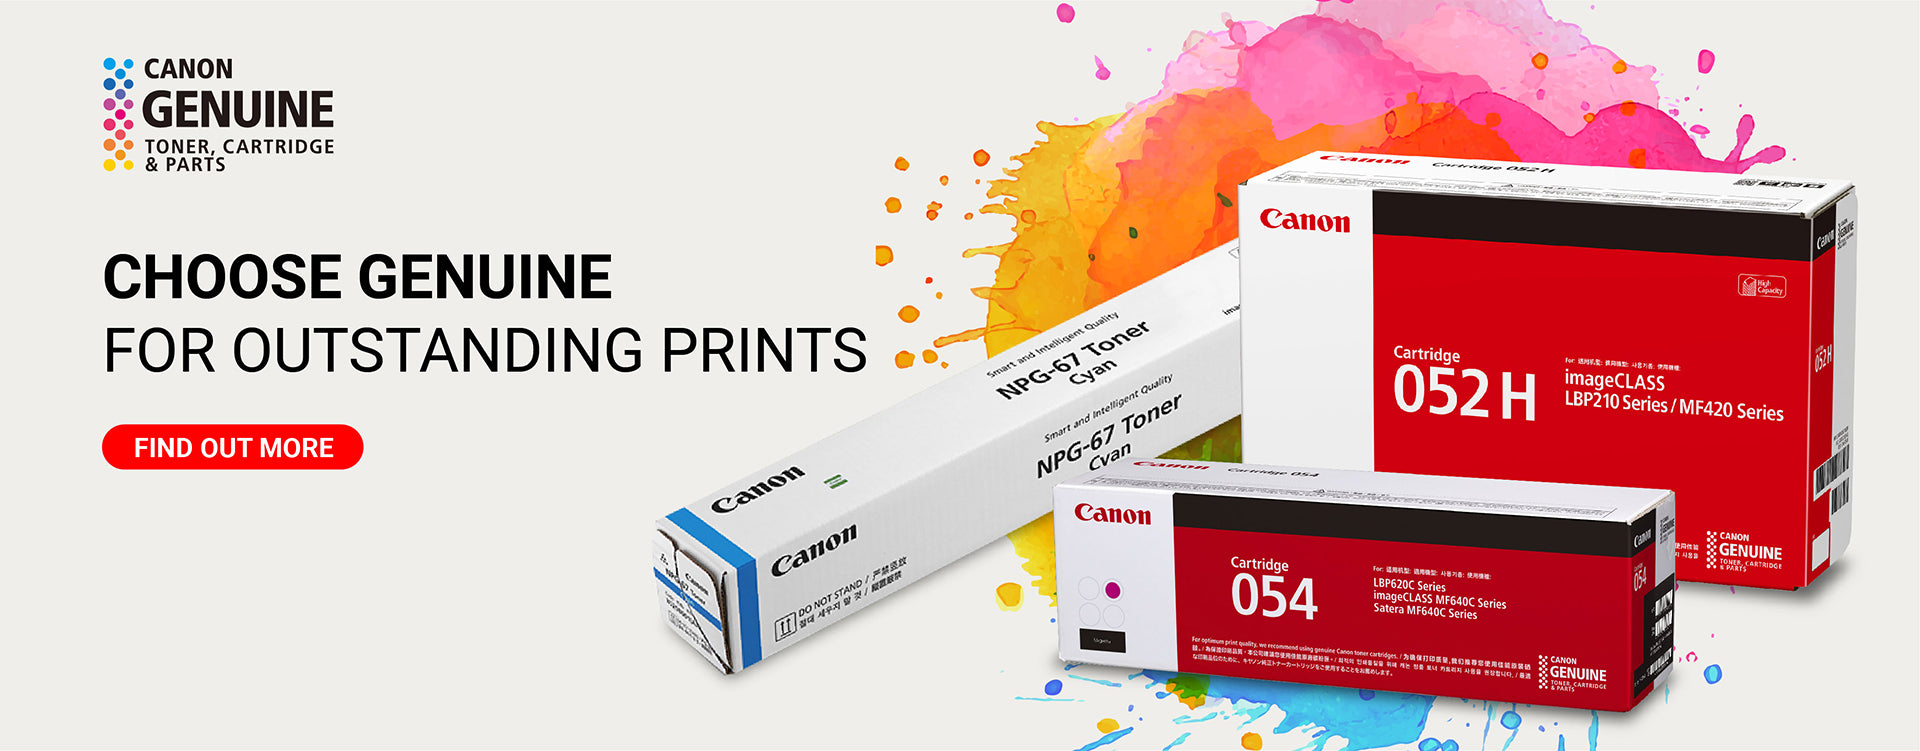 Canon Brand Printer Supplies